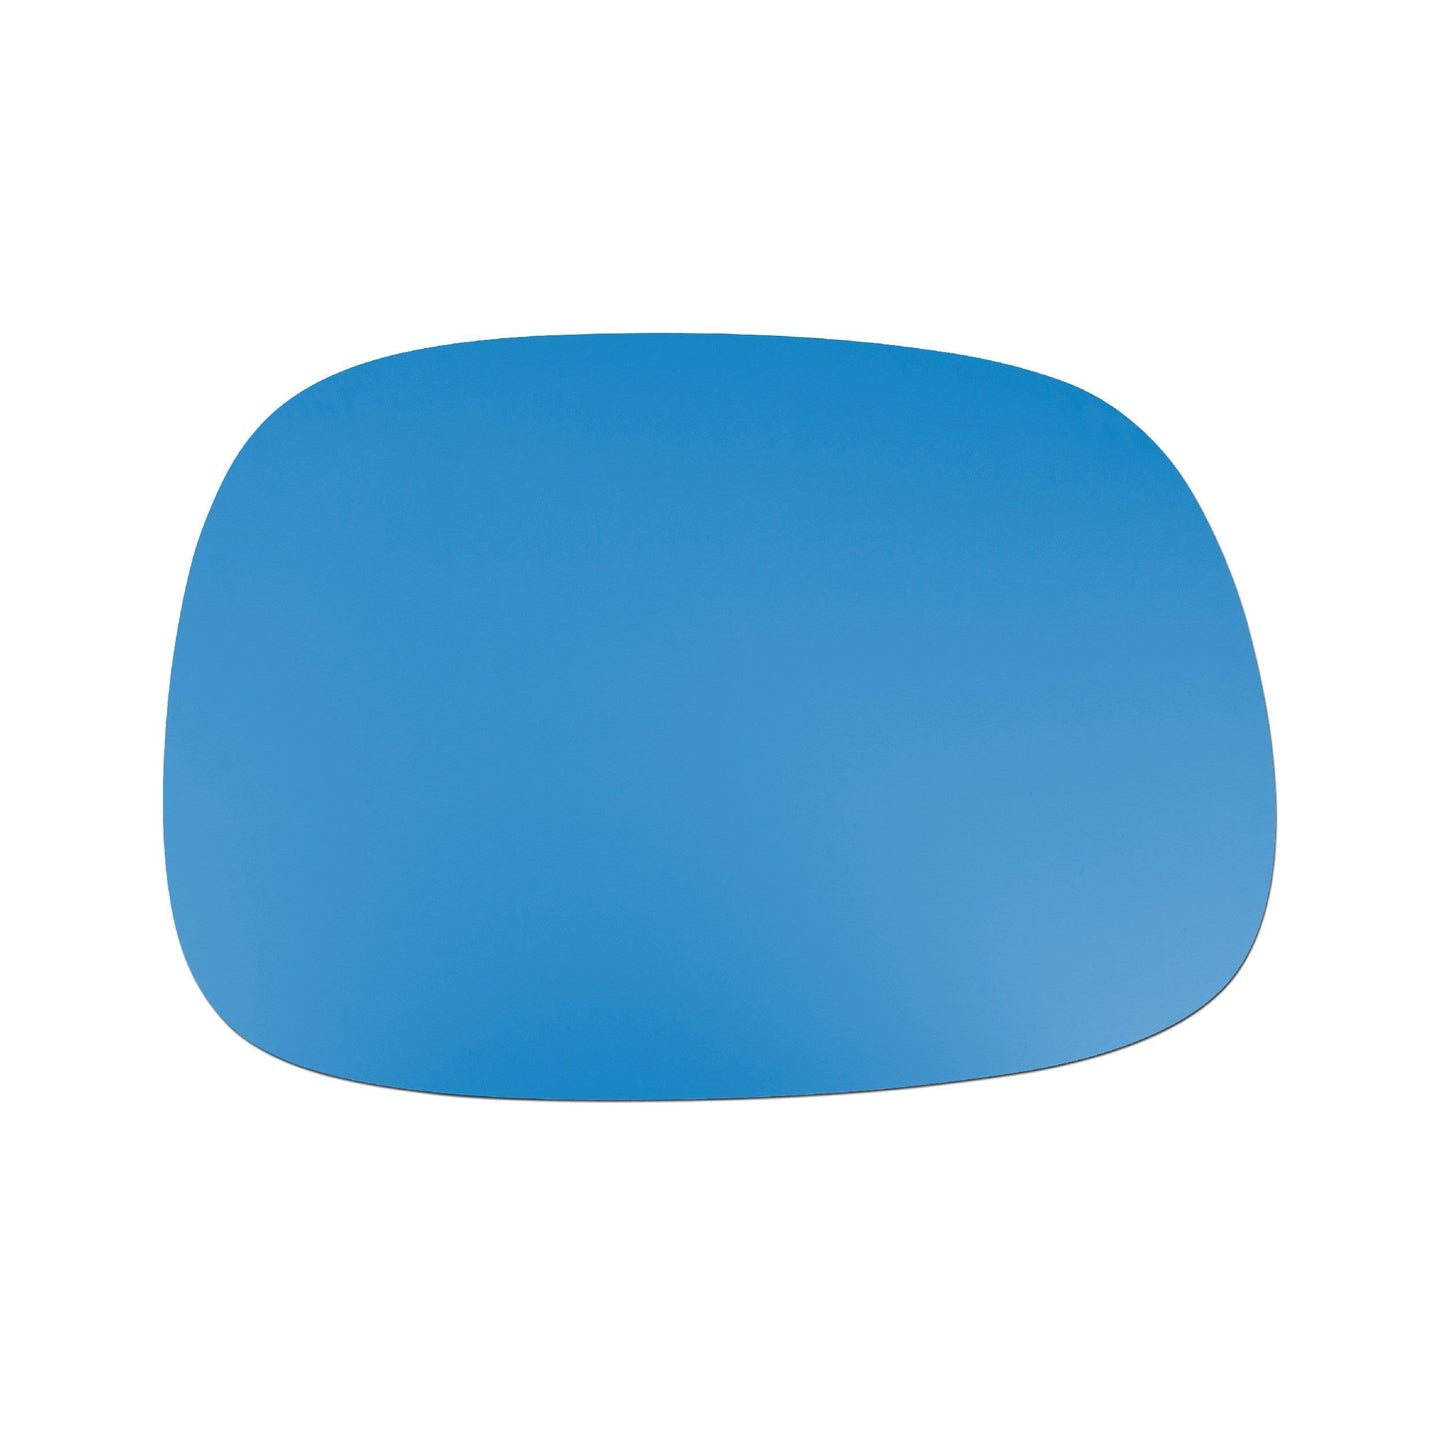 Stół Maple MID - Niebieskie